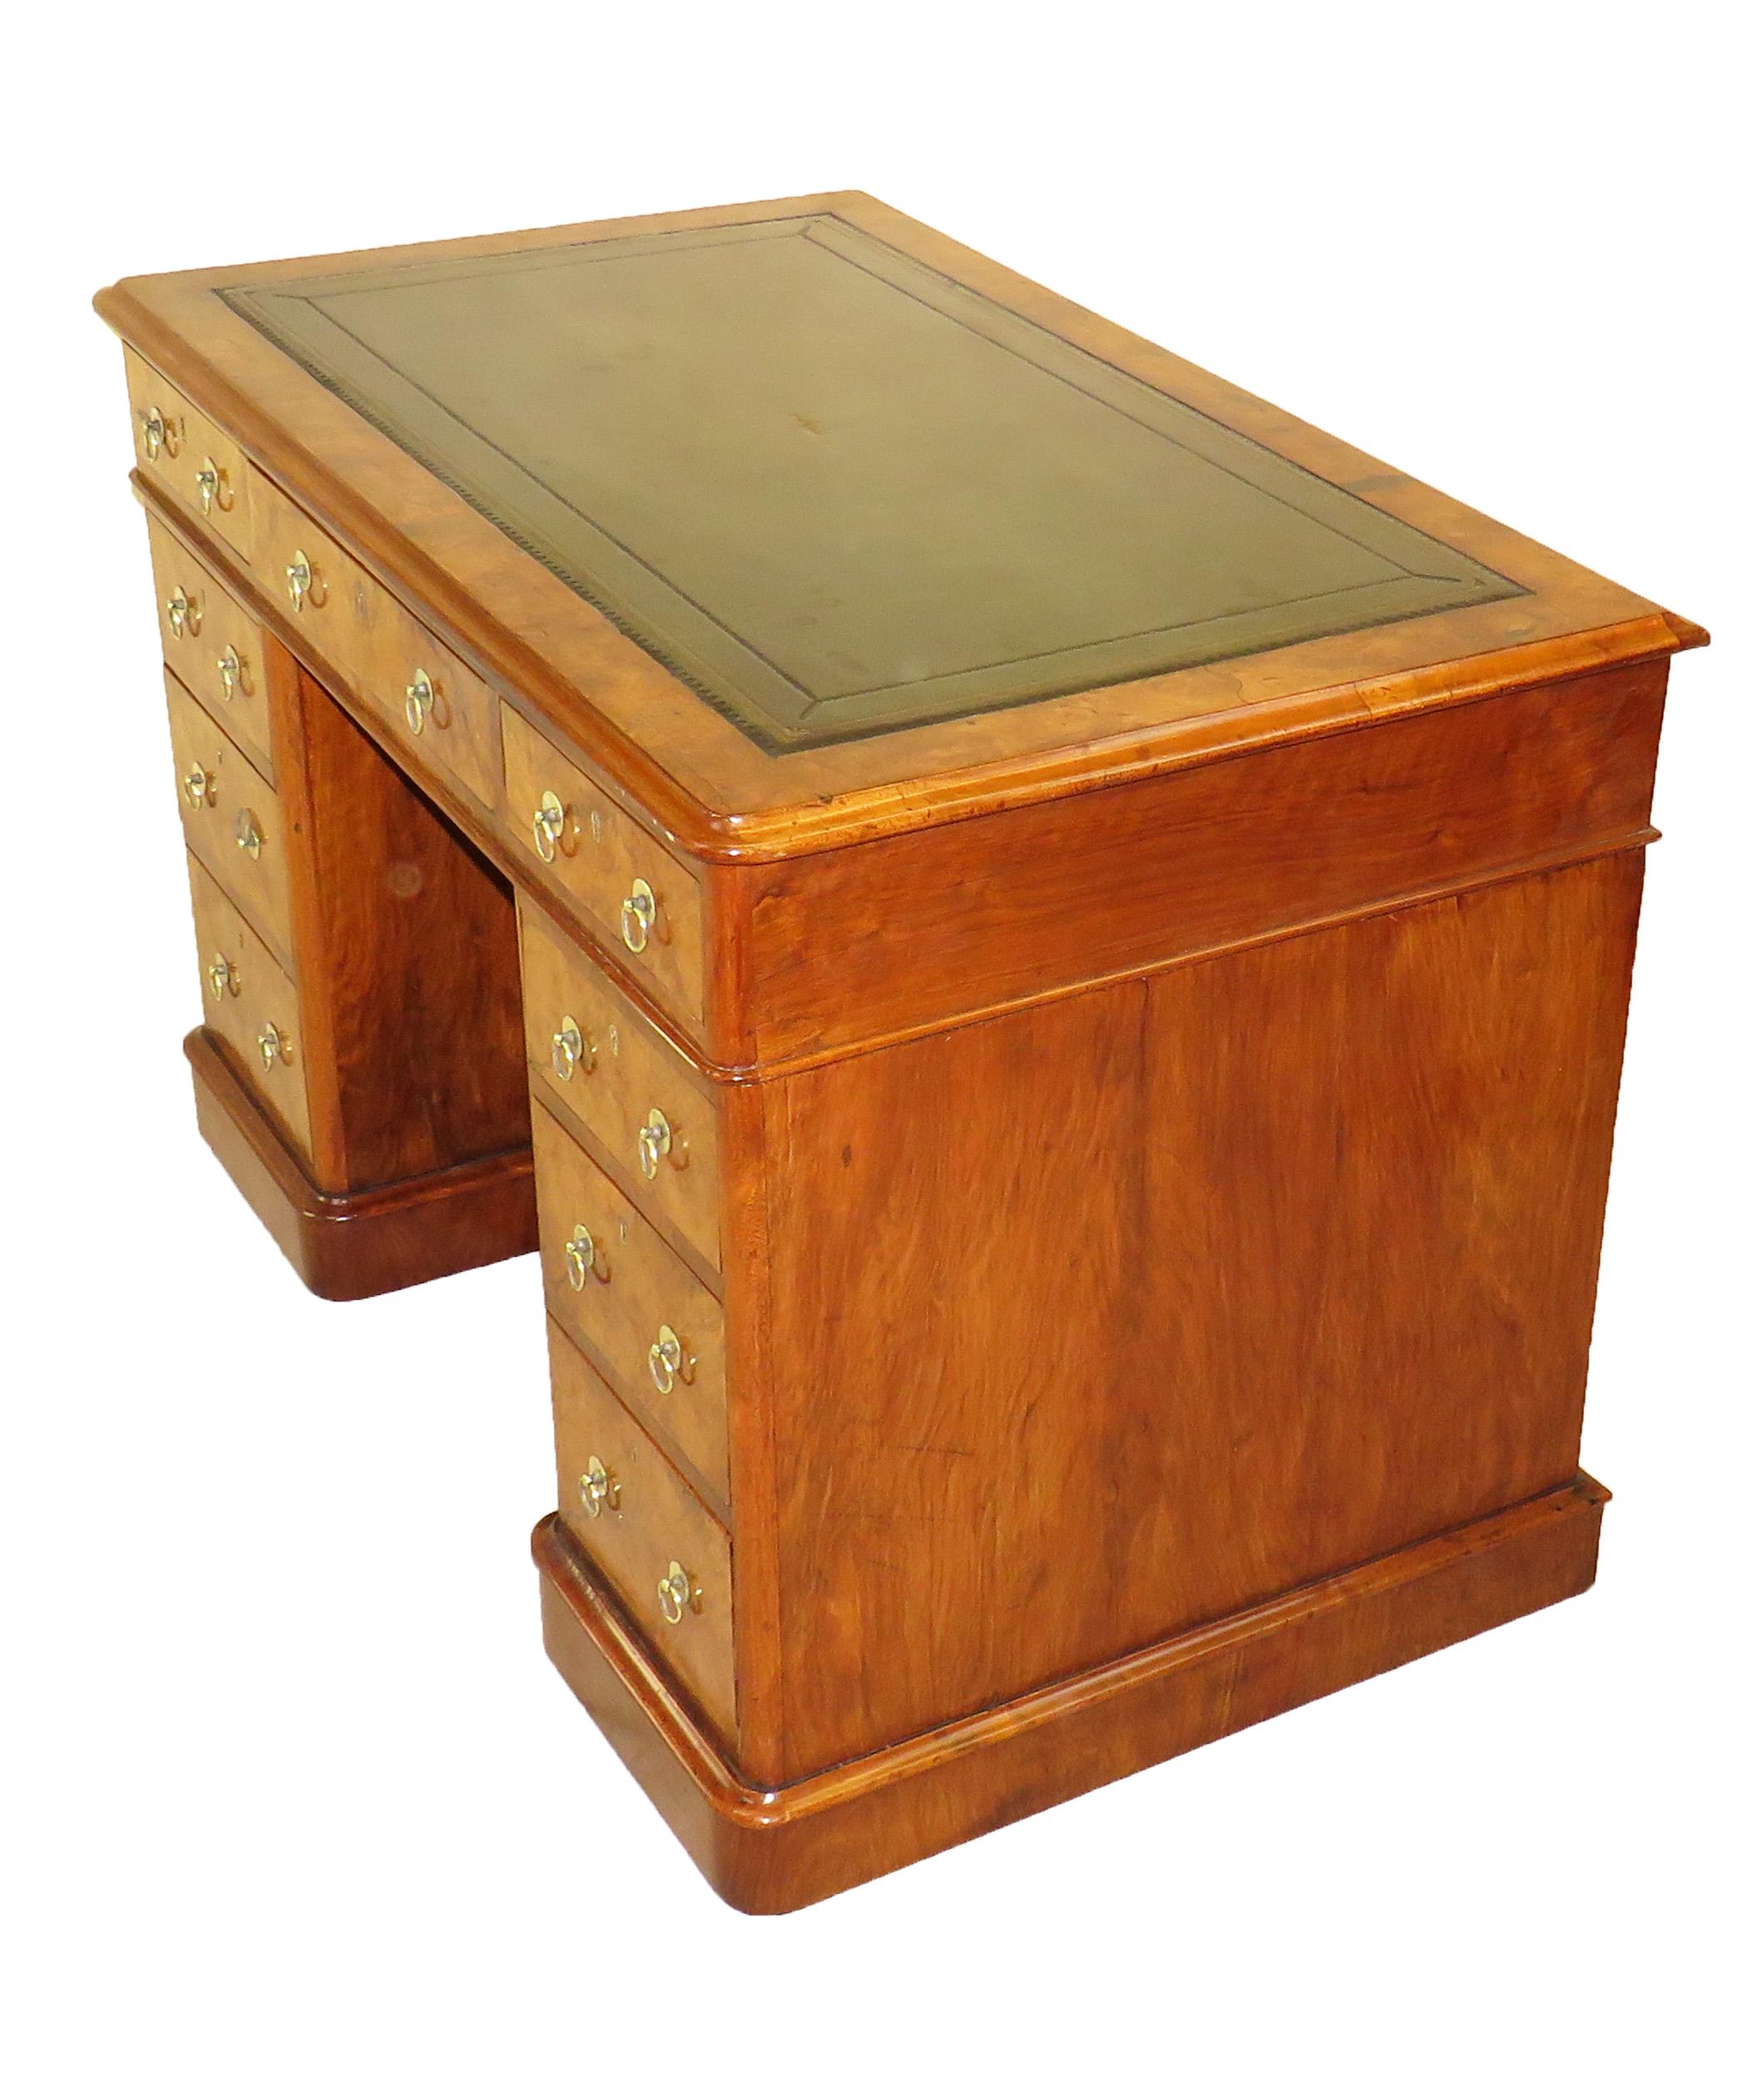 Burr Walnut 19th Century Antique Pedestal Desk (19. Jahrhundert)